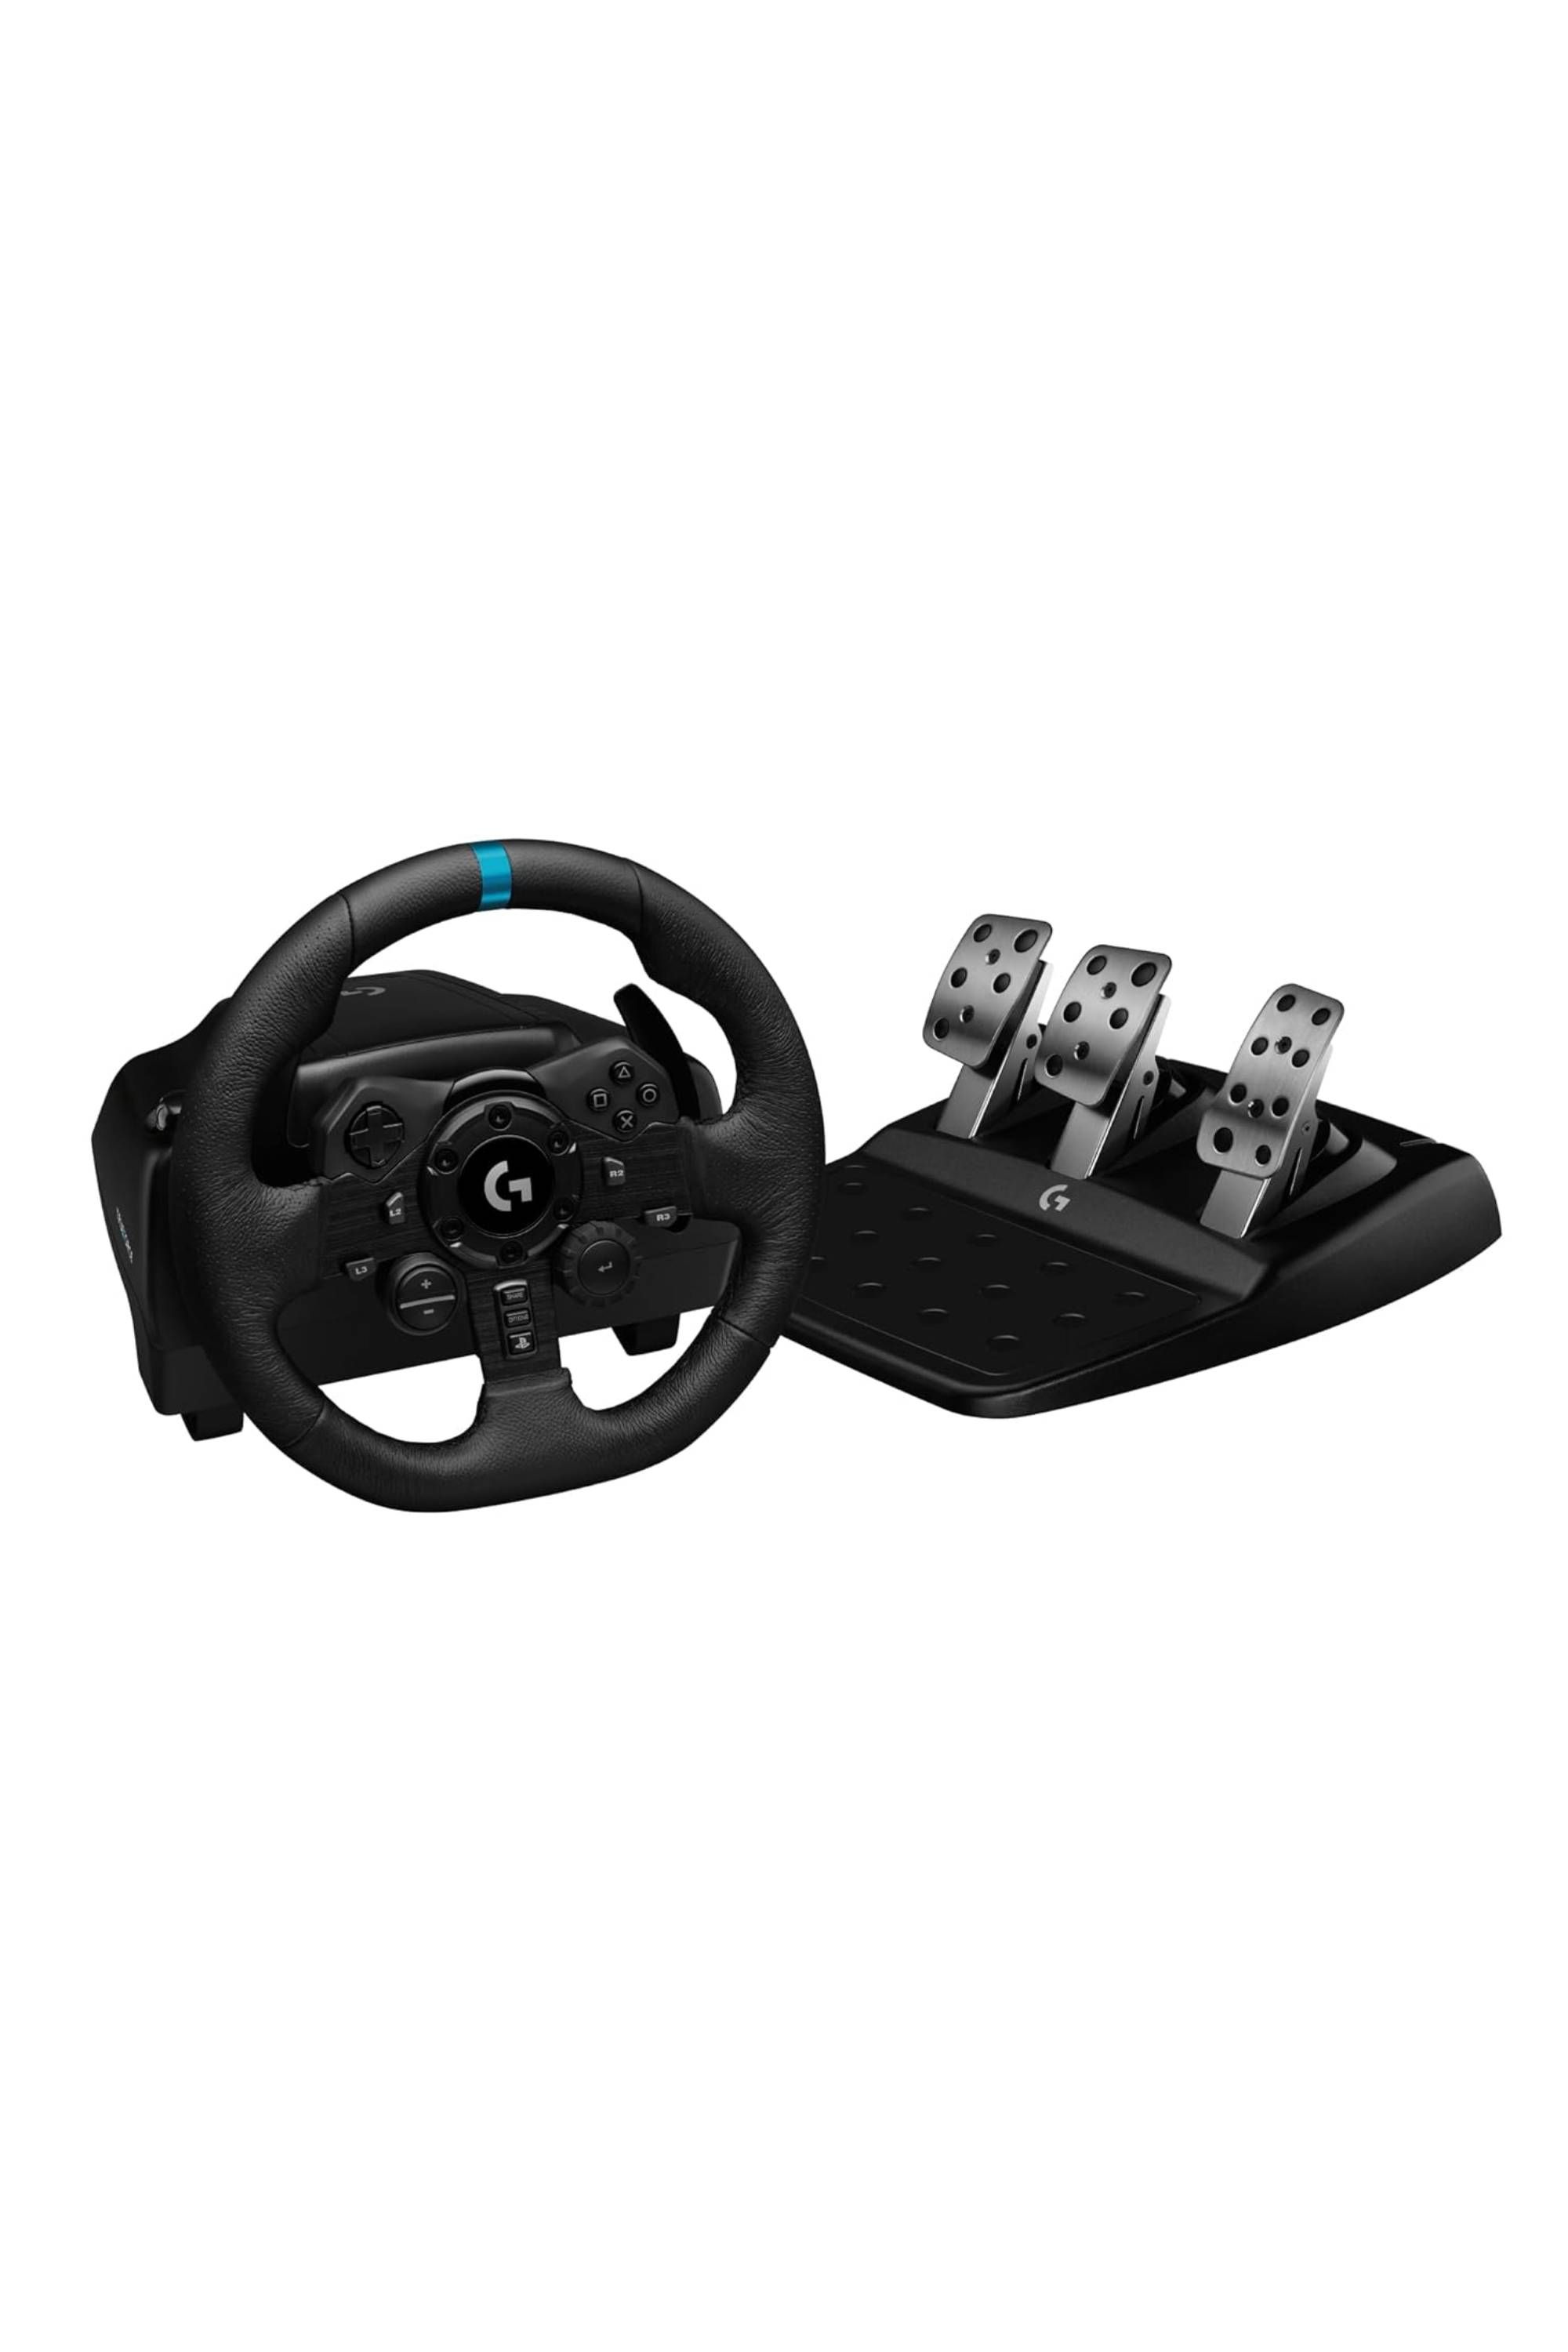 Logitech G923 Review: Still the Best-Value Racing Wheel - Tech Advisor